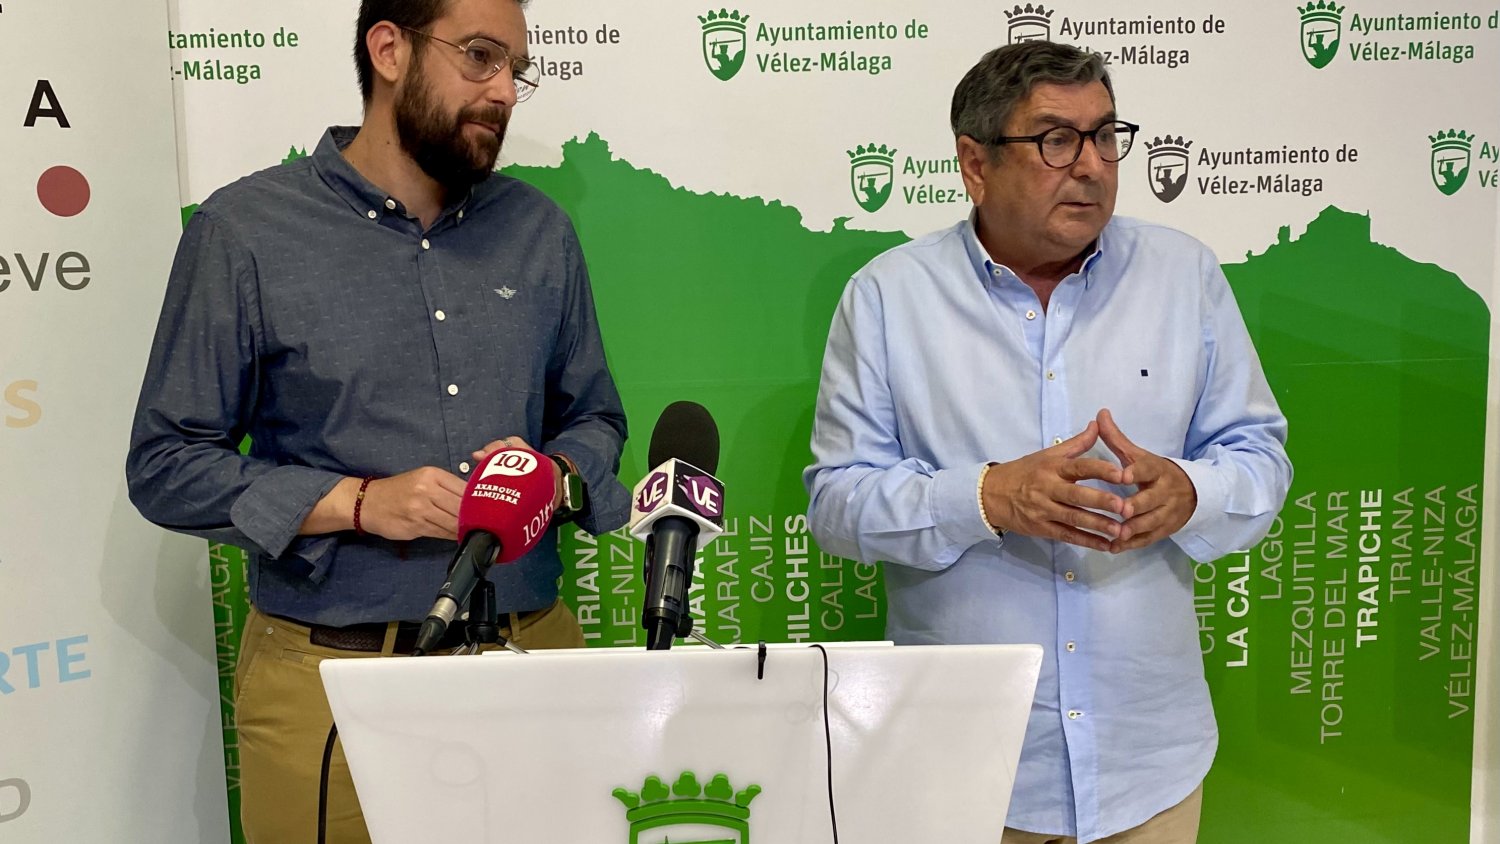 Vélez-Málaga anuncia la gestión de más de 1 millón de euros para crear empleo para unos 115 jóvenes del municipio